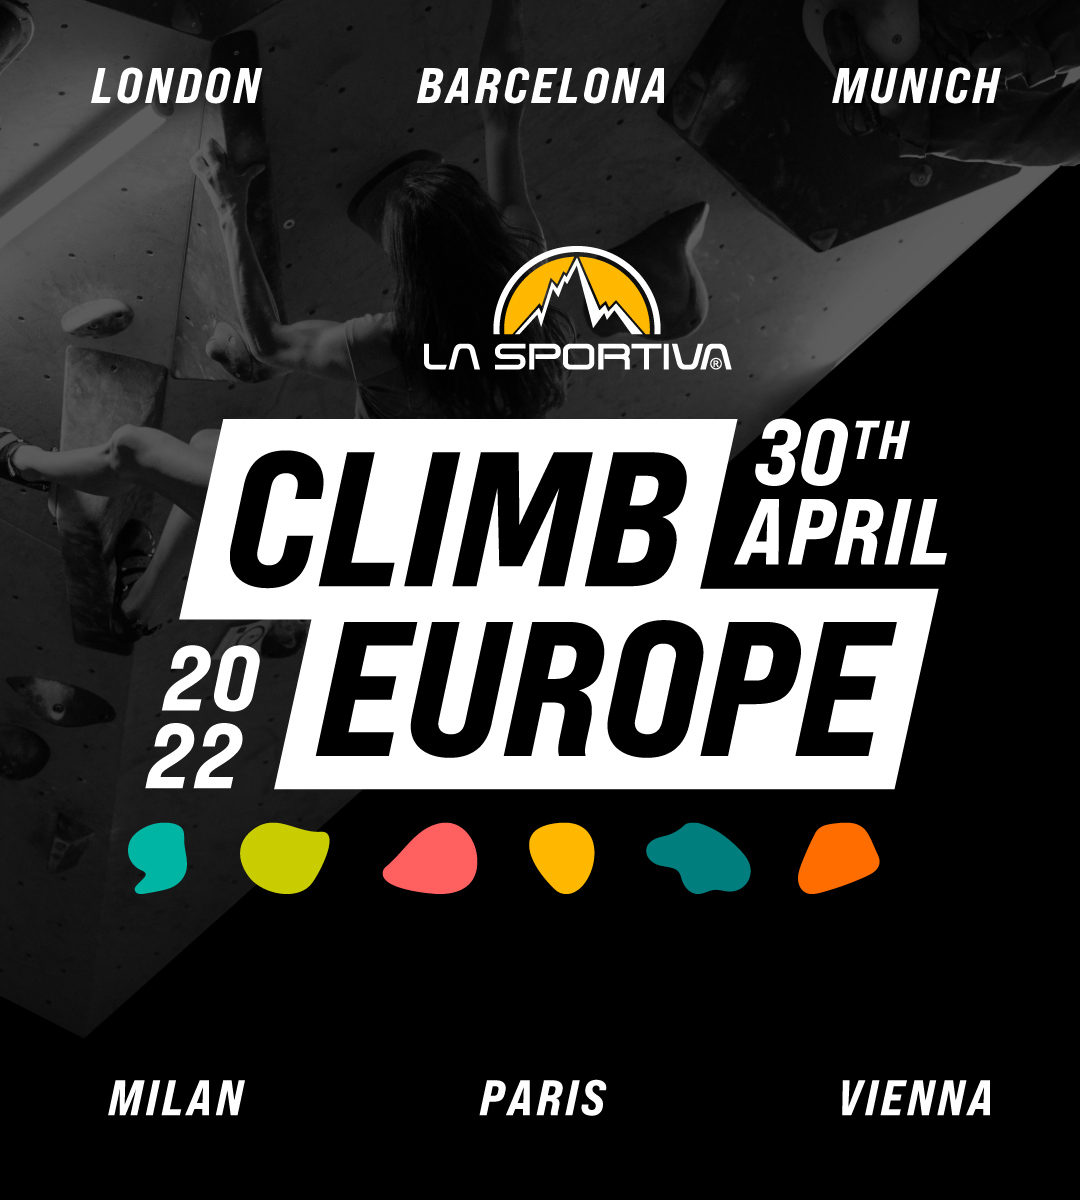 Climb Europe La Sportiva samedi 30 avril à Vertical'Art Paris Chevaleret, événement promotionnel de la marque italienne d'escalade